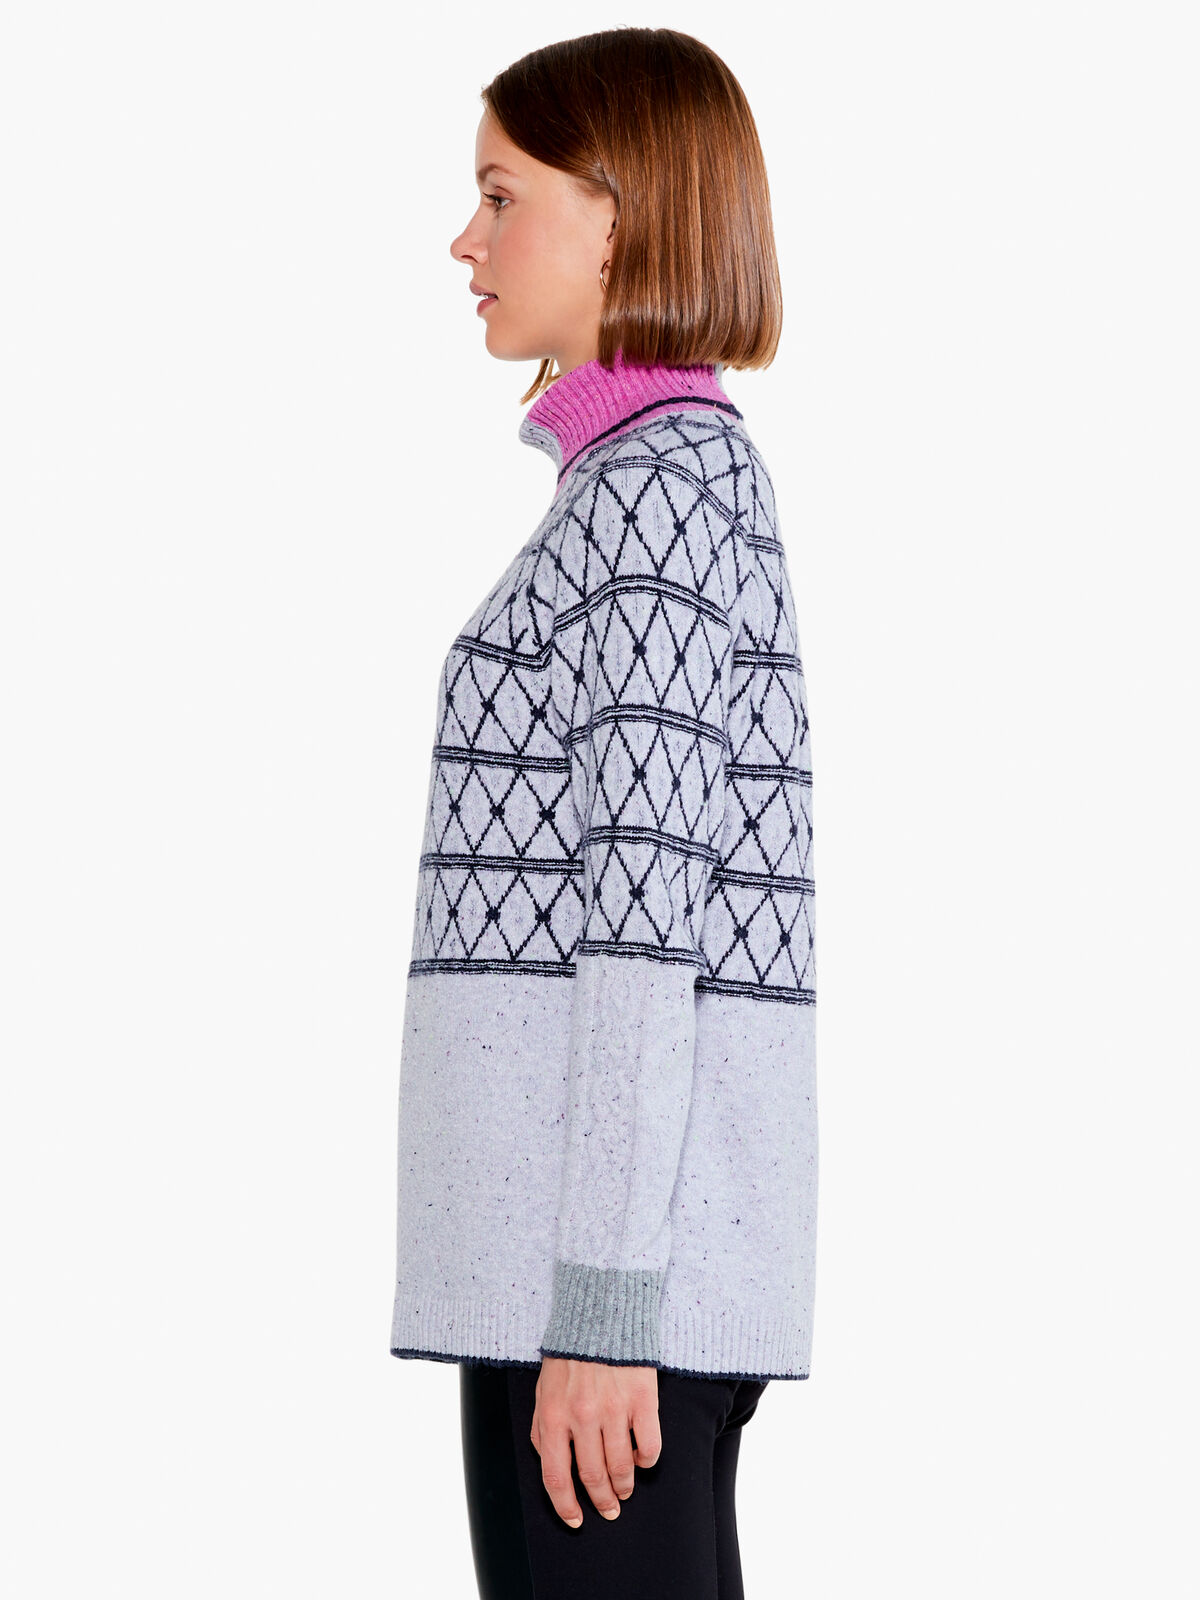 Mosaic Stitched Sweater